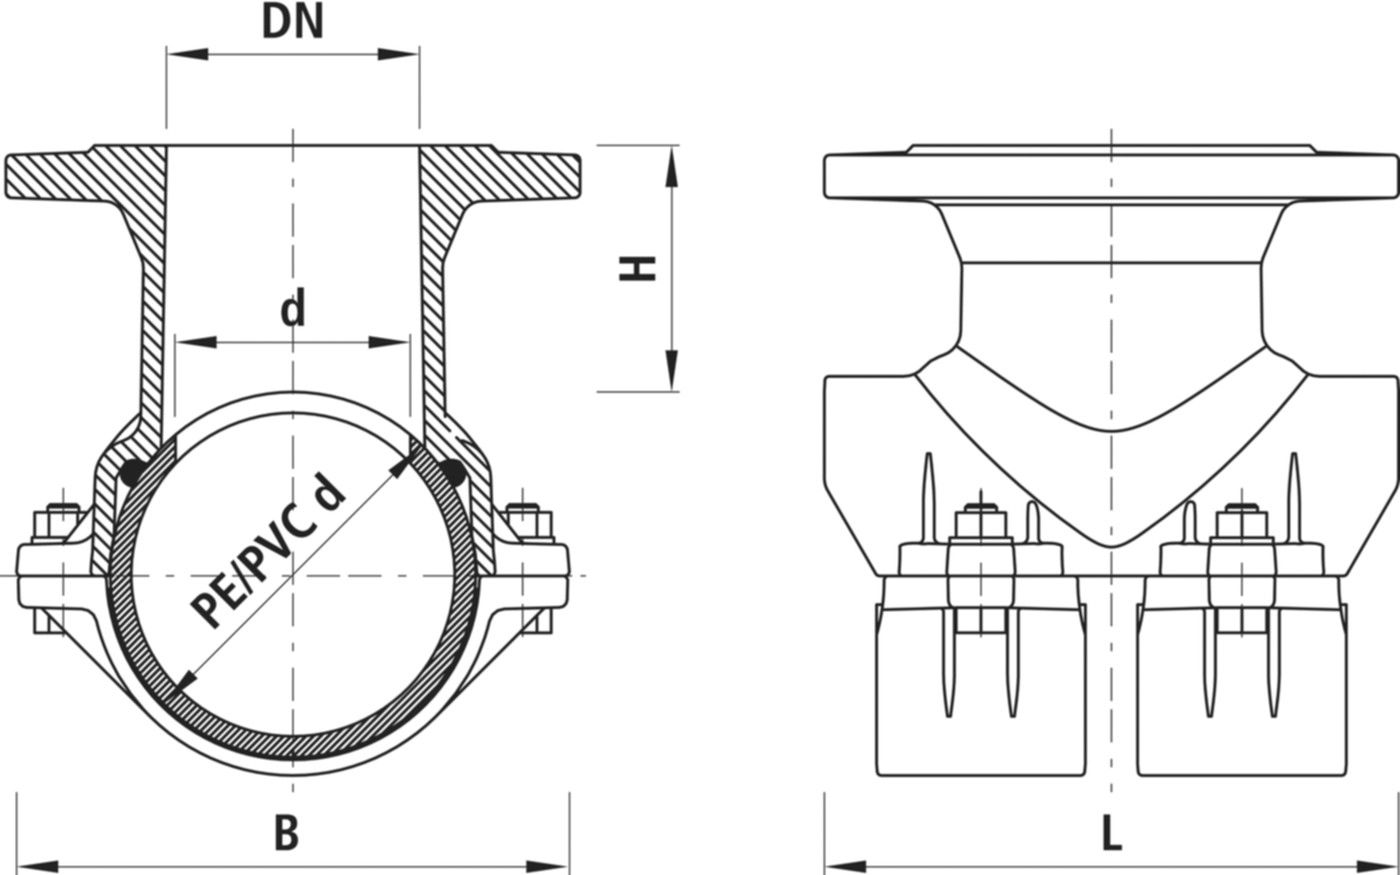 Haku-Anbohrschelle mit Flansch 5230 d 225mm / DN 100 - Hawle Hausanschluss- und Anbohrarmaturen